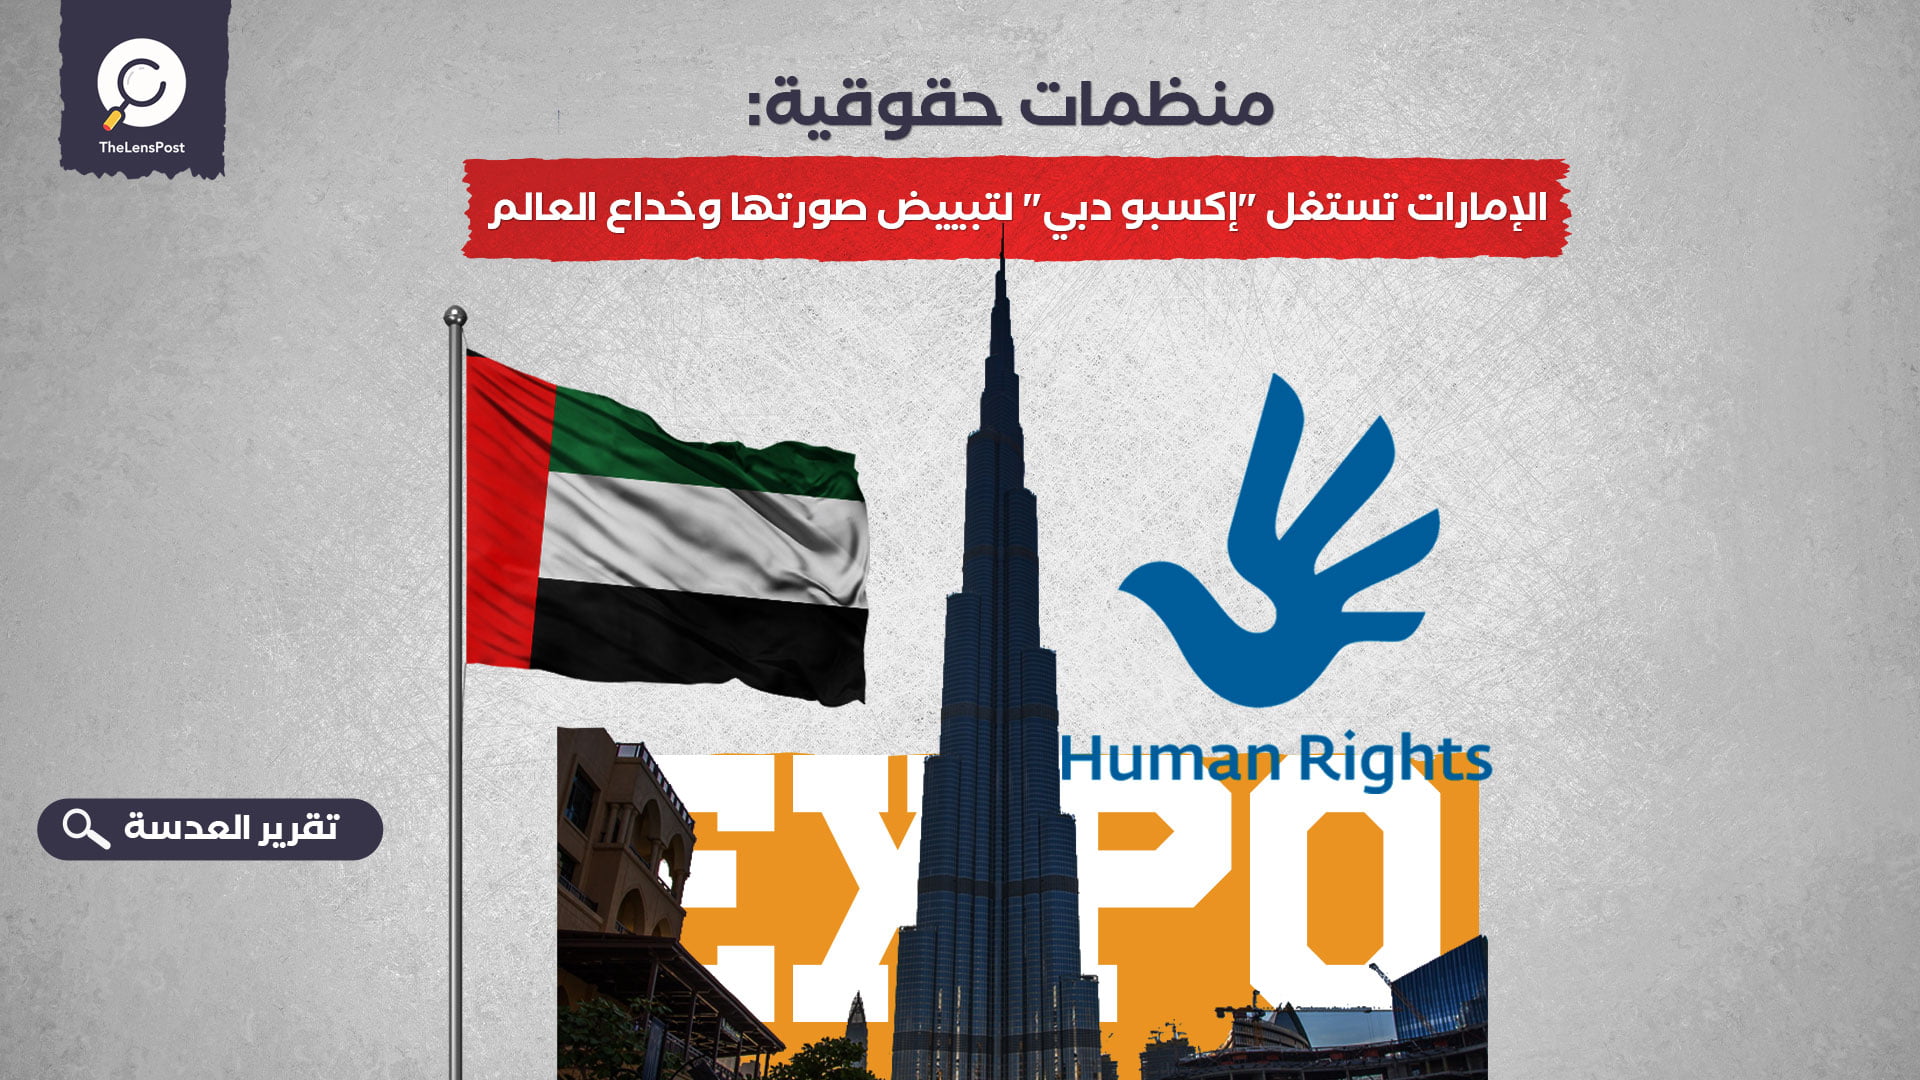 منظمات حقوقية: الإمارات تستغل "إكسبو دبي" لتبييض صورتها وخداع العالم